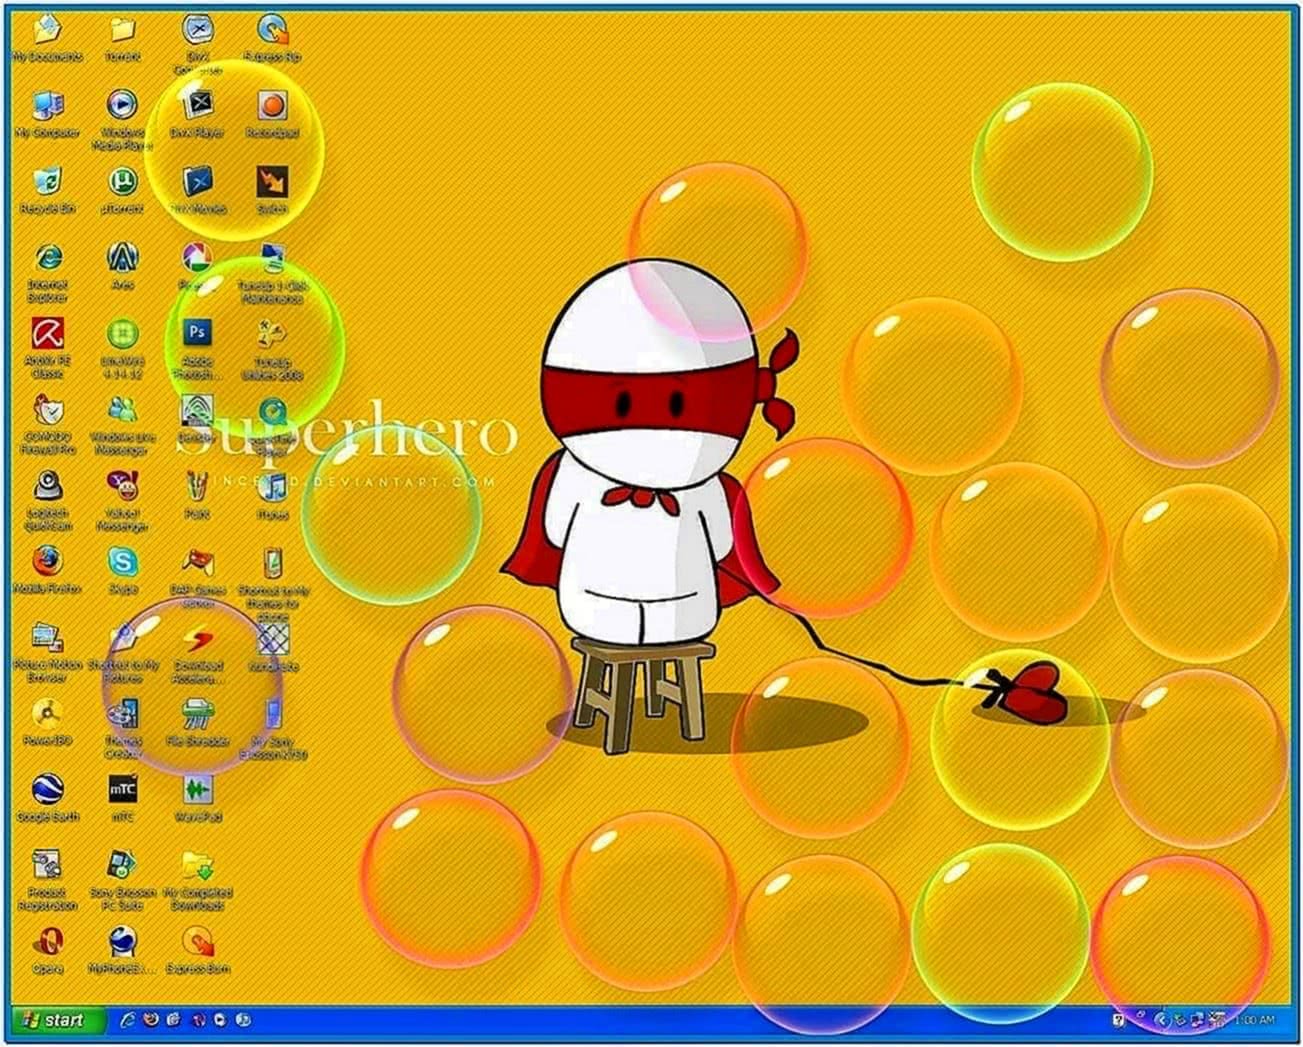 Vista Bubbles Screensaver Windows XP